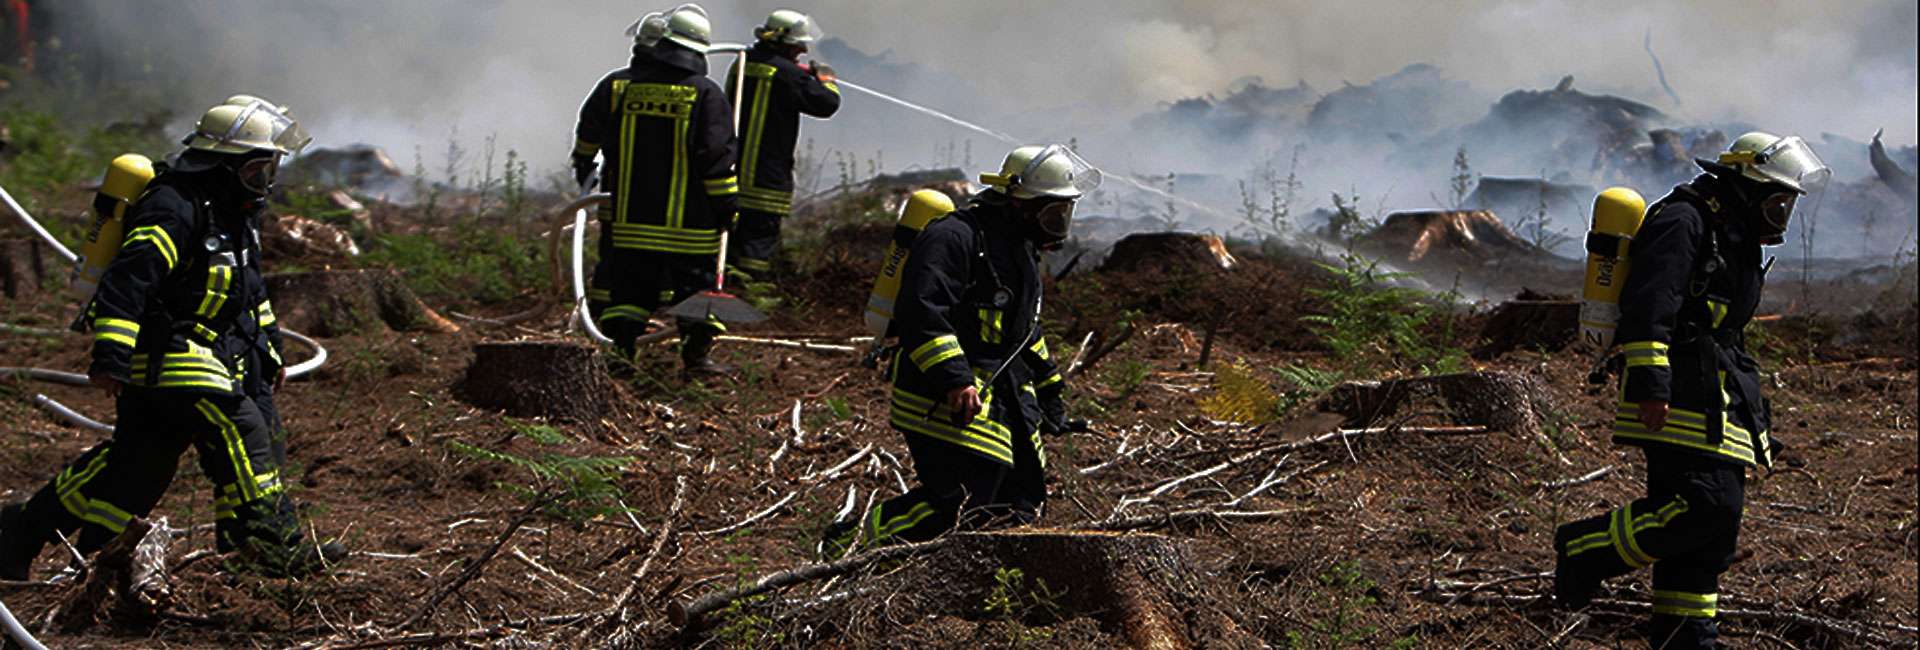 Vegetationsbrand – Deutsche Feuerwehren unterstützen Frankreich mit spezieller Einheit